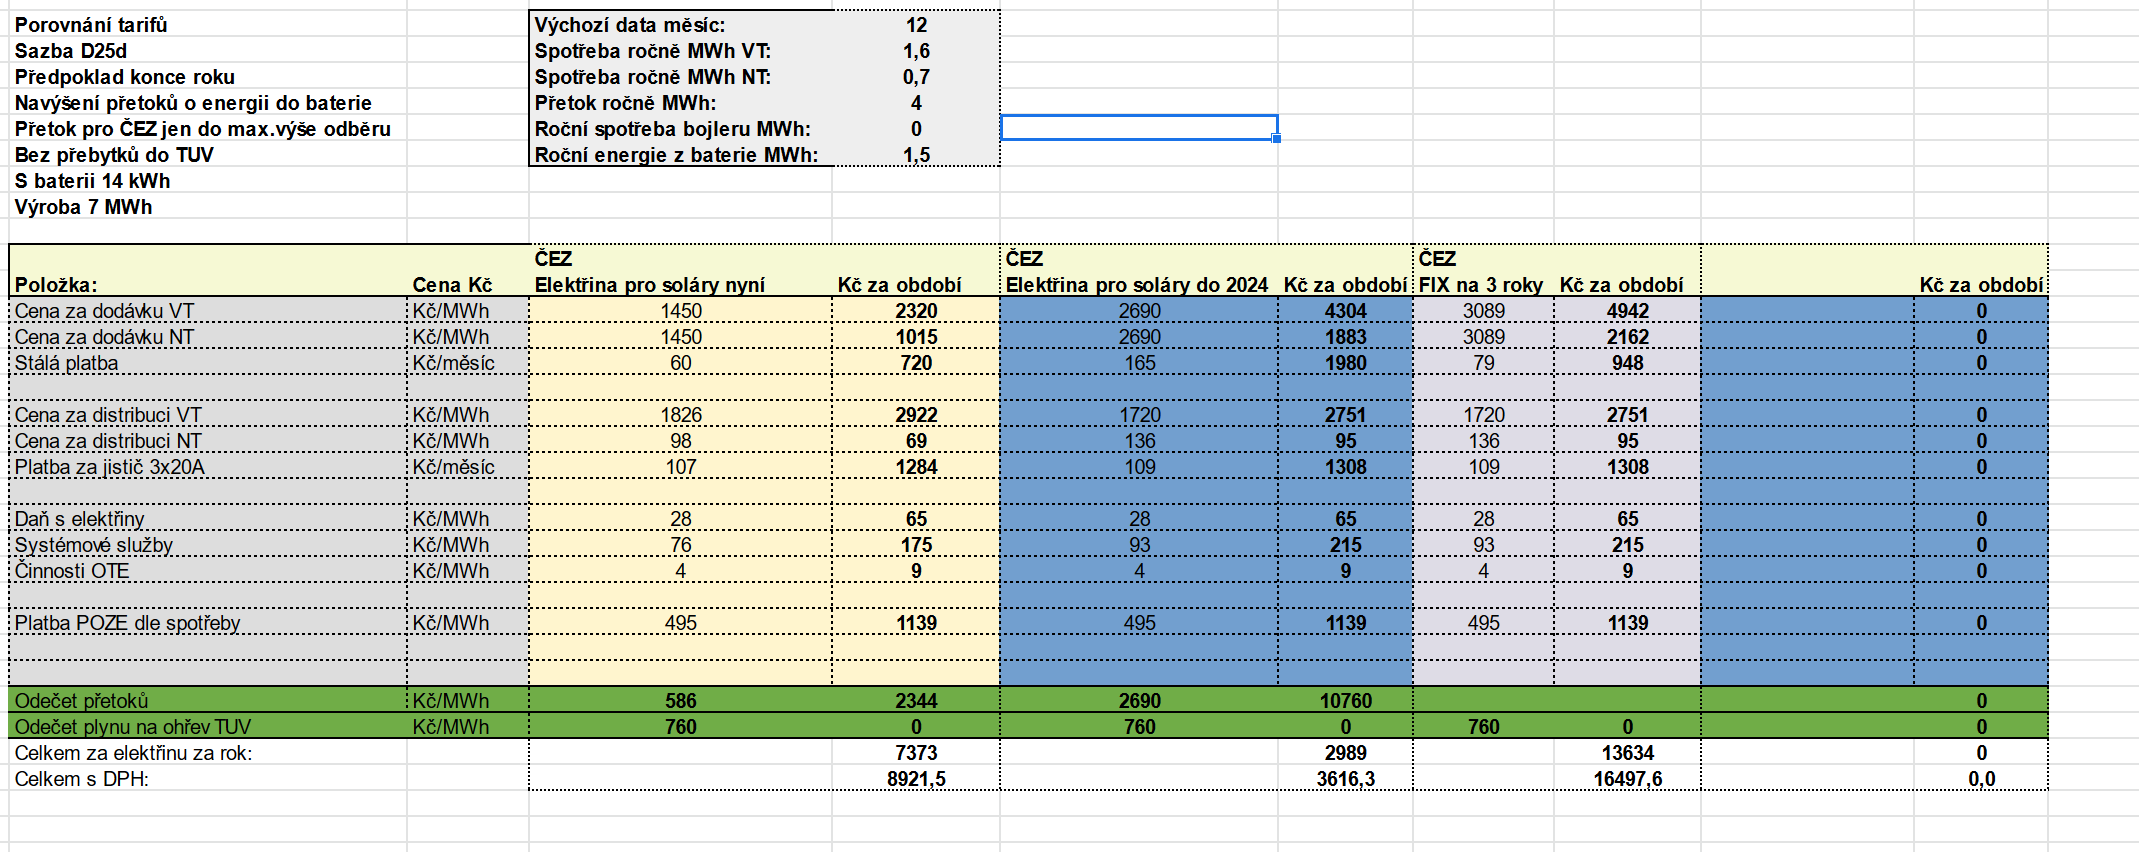 Screenshot 2021-12-02 at 08-04-31 Porovnání tarifů virtuální baterie od ČEZu a ostatních xlsx.png